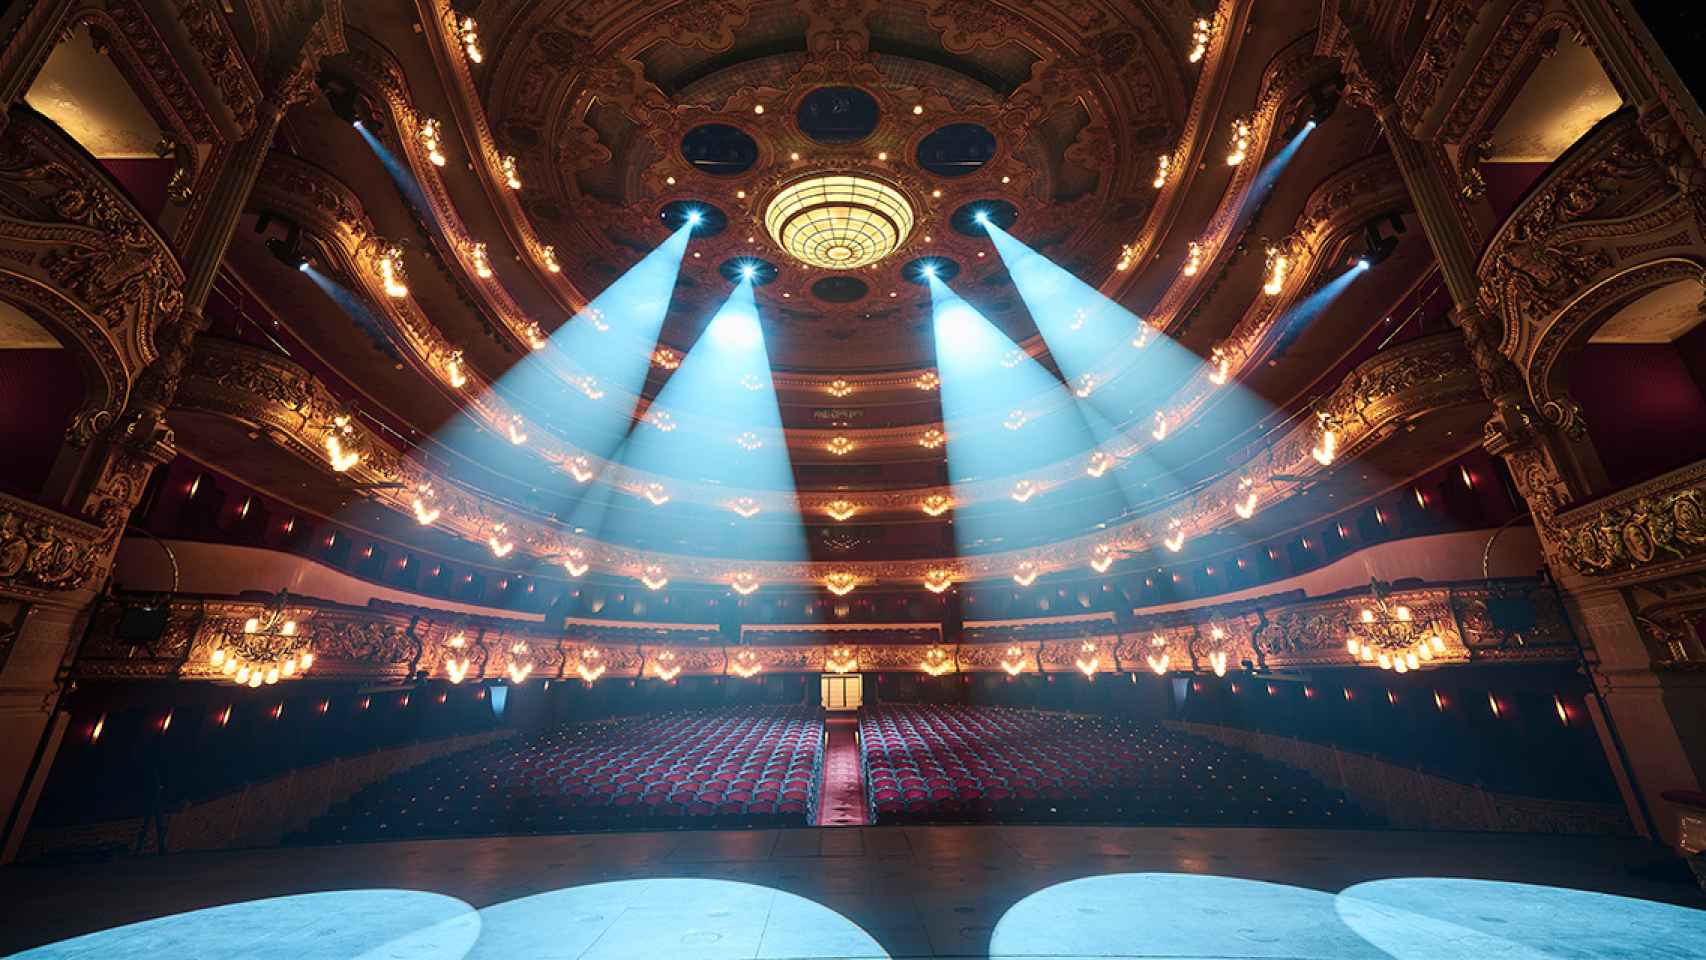 La sala principal del Gran Teatro del Liceu, con 2.292 localidades, en una imagen de archivo / Paco Amate - Liceu